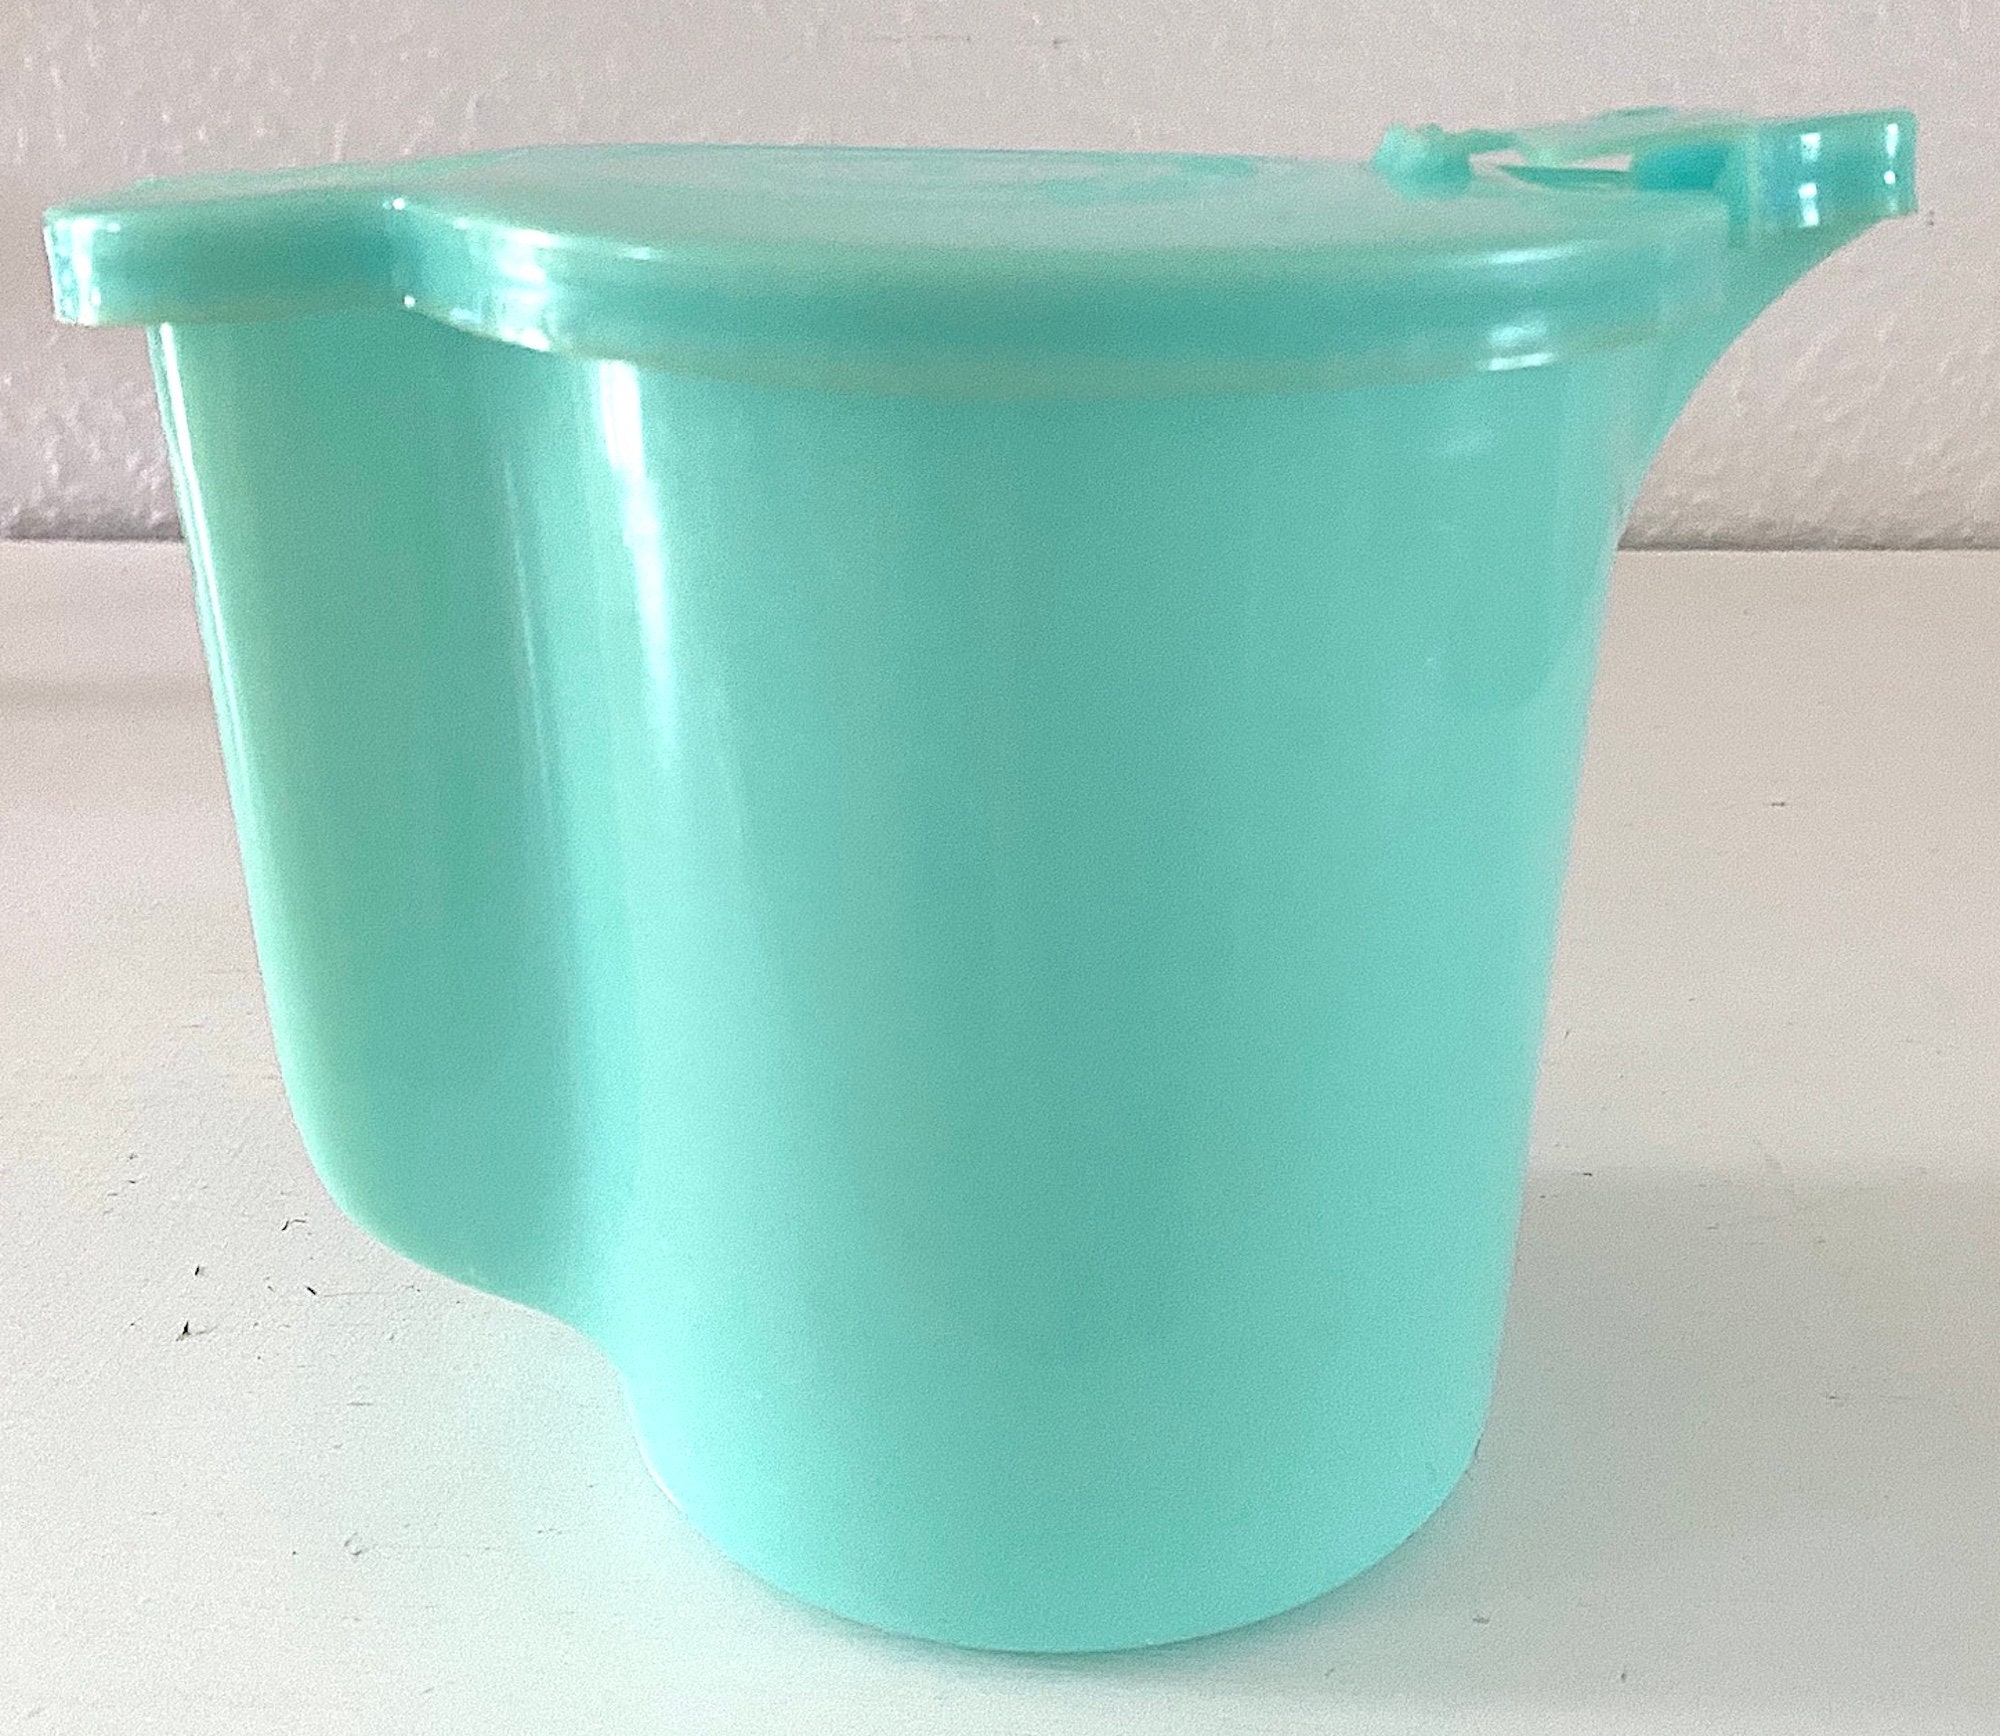 1960’s Tupperware Cookie Jar